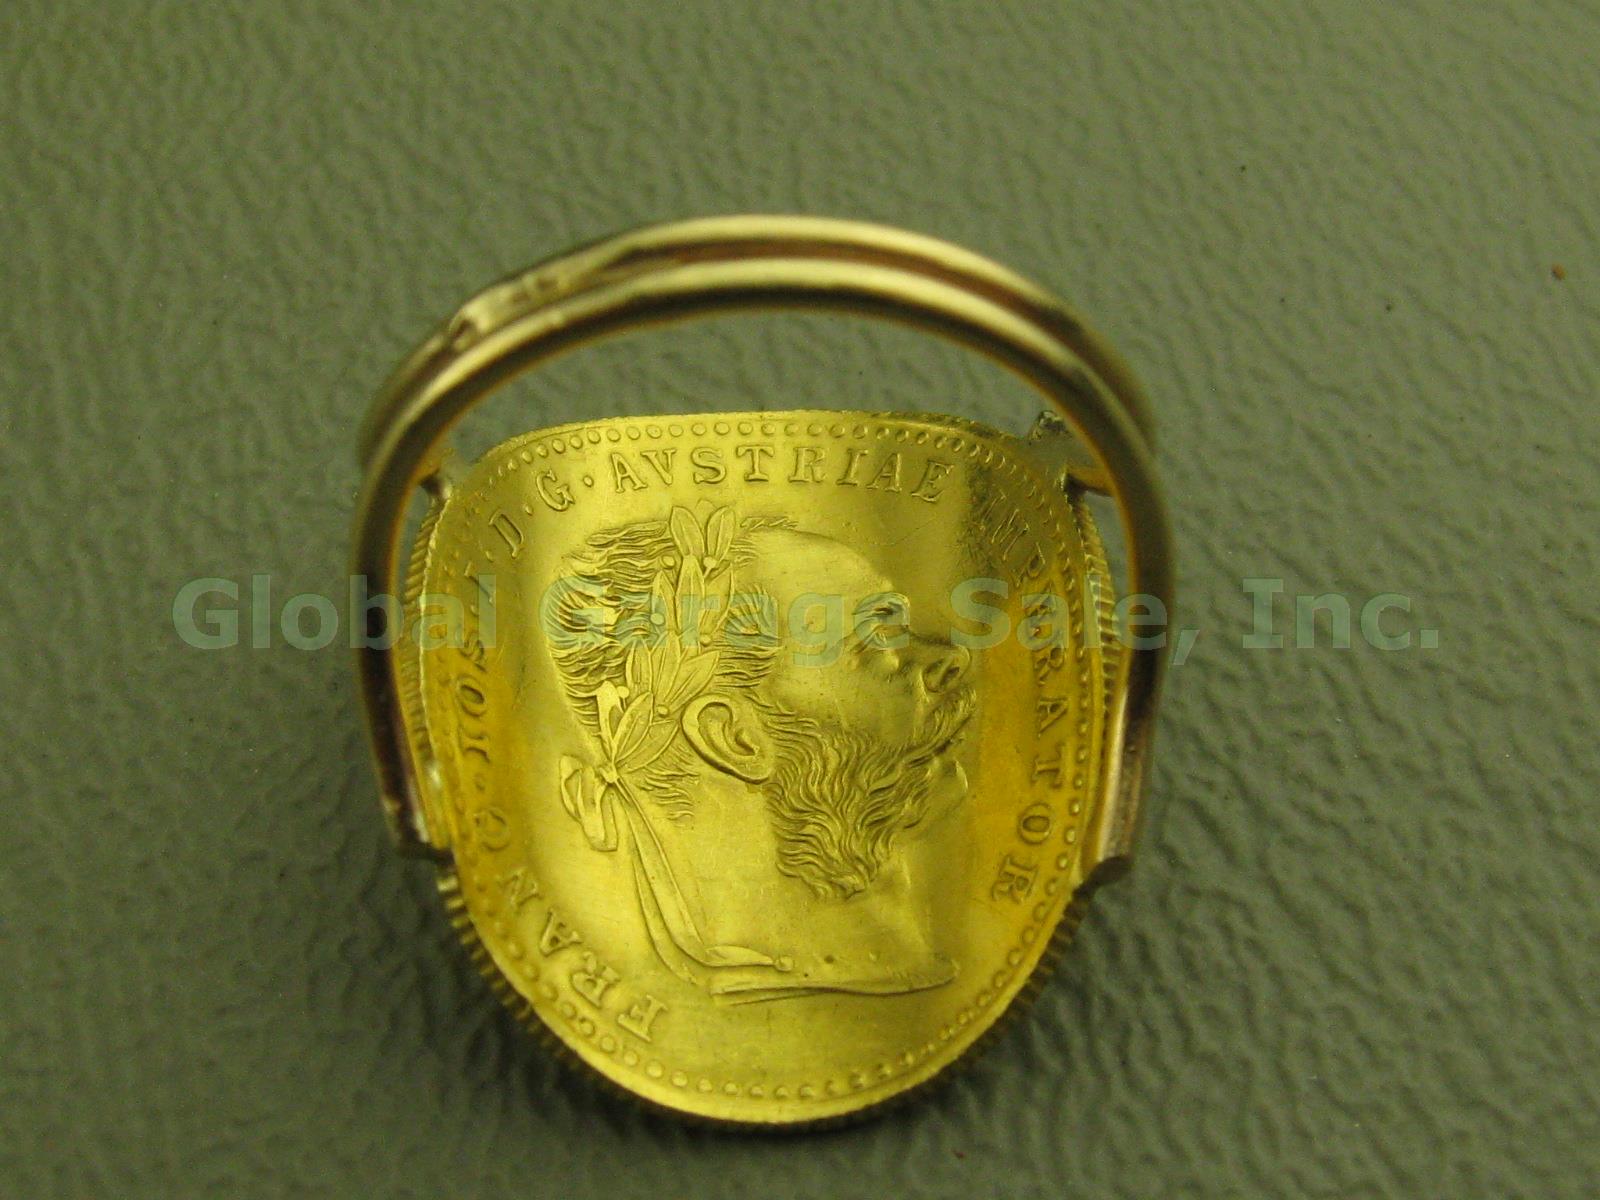 1915 Austria Avstriae Imperator IOS IDG Franc Ducat Gold Coin Ring 4.3g Sz 4.75 2